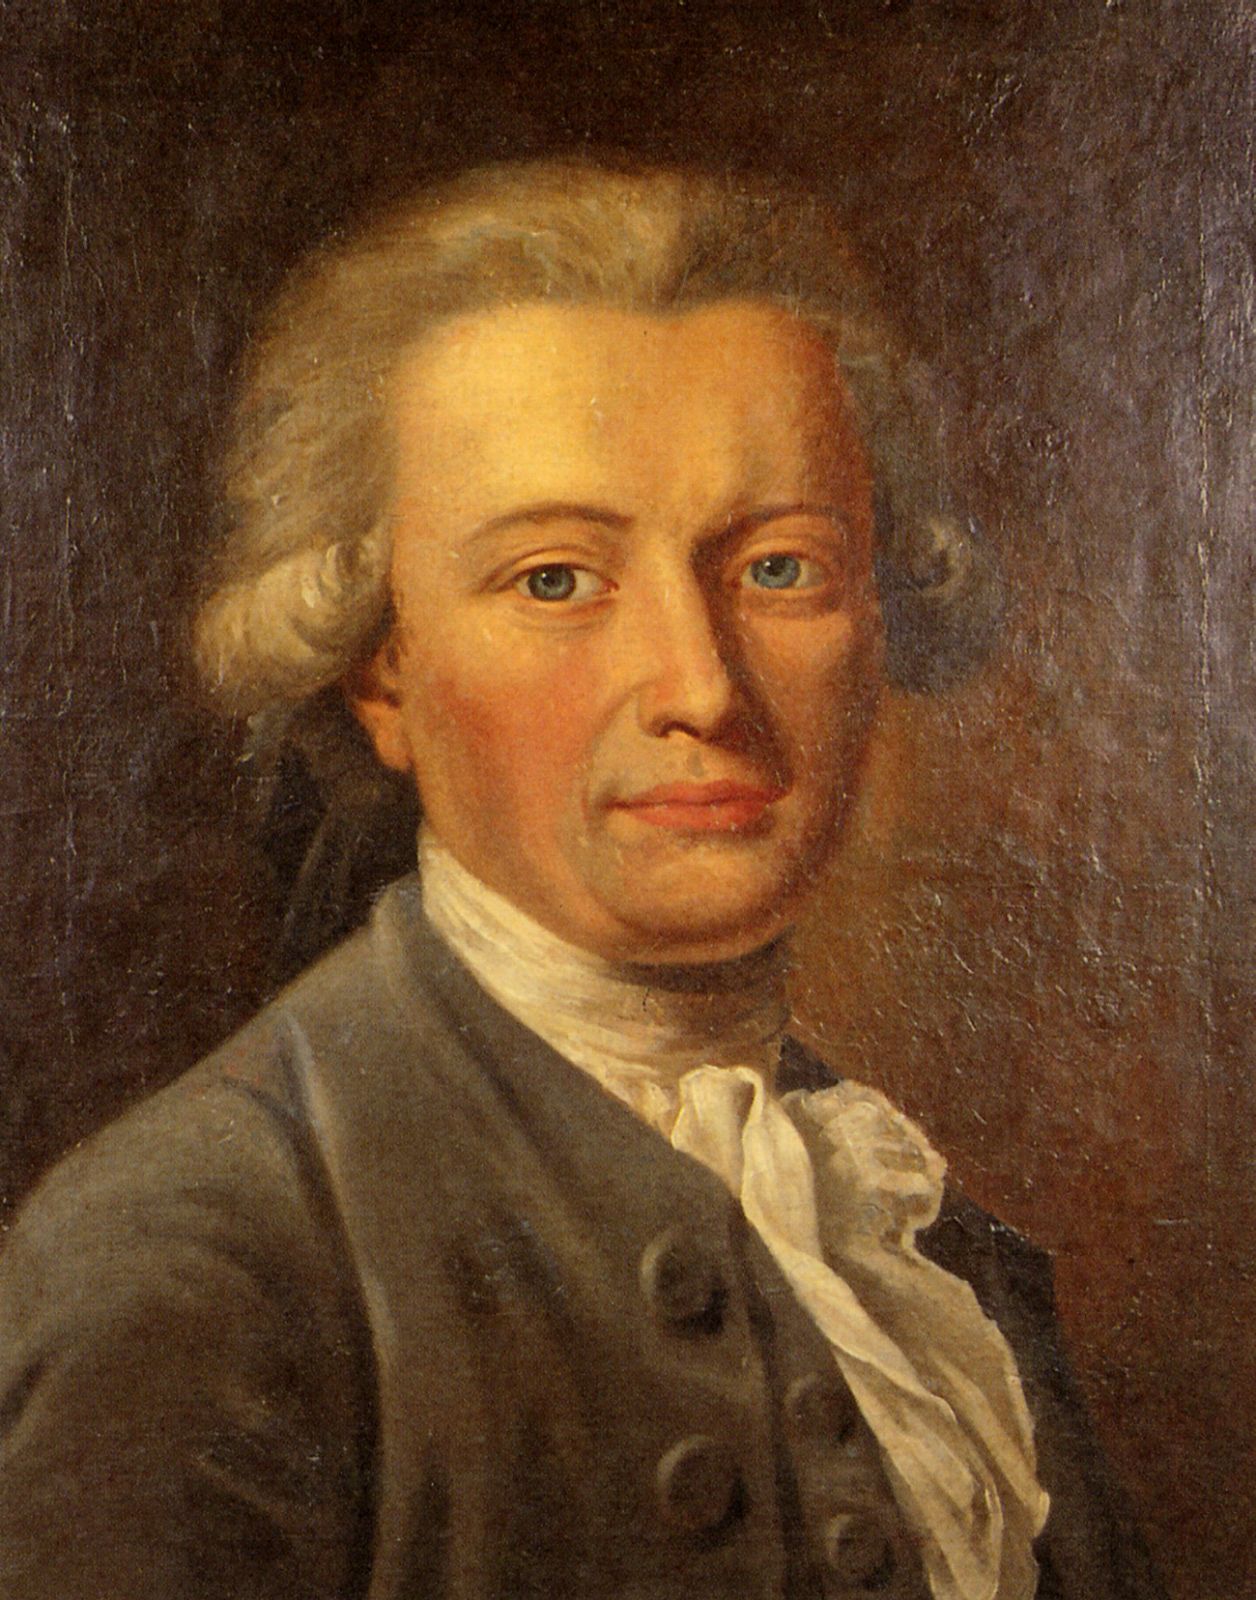 Georg Forster (Gemälde von <b>Johann Heinrich</b> Wilhelm Tischbein?, um 1785) - forstpor